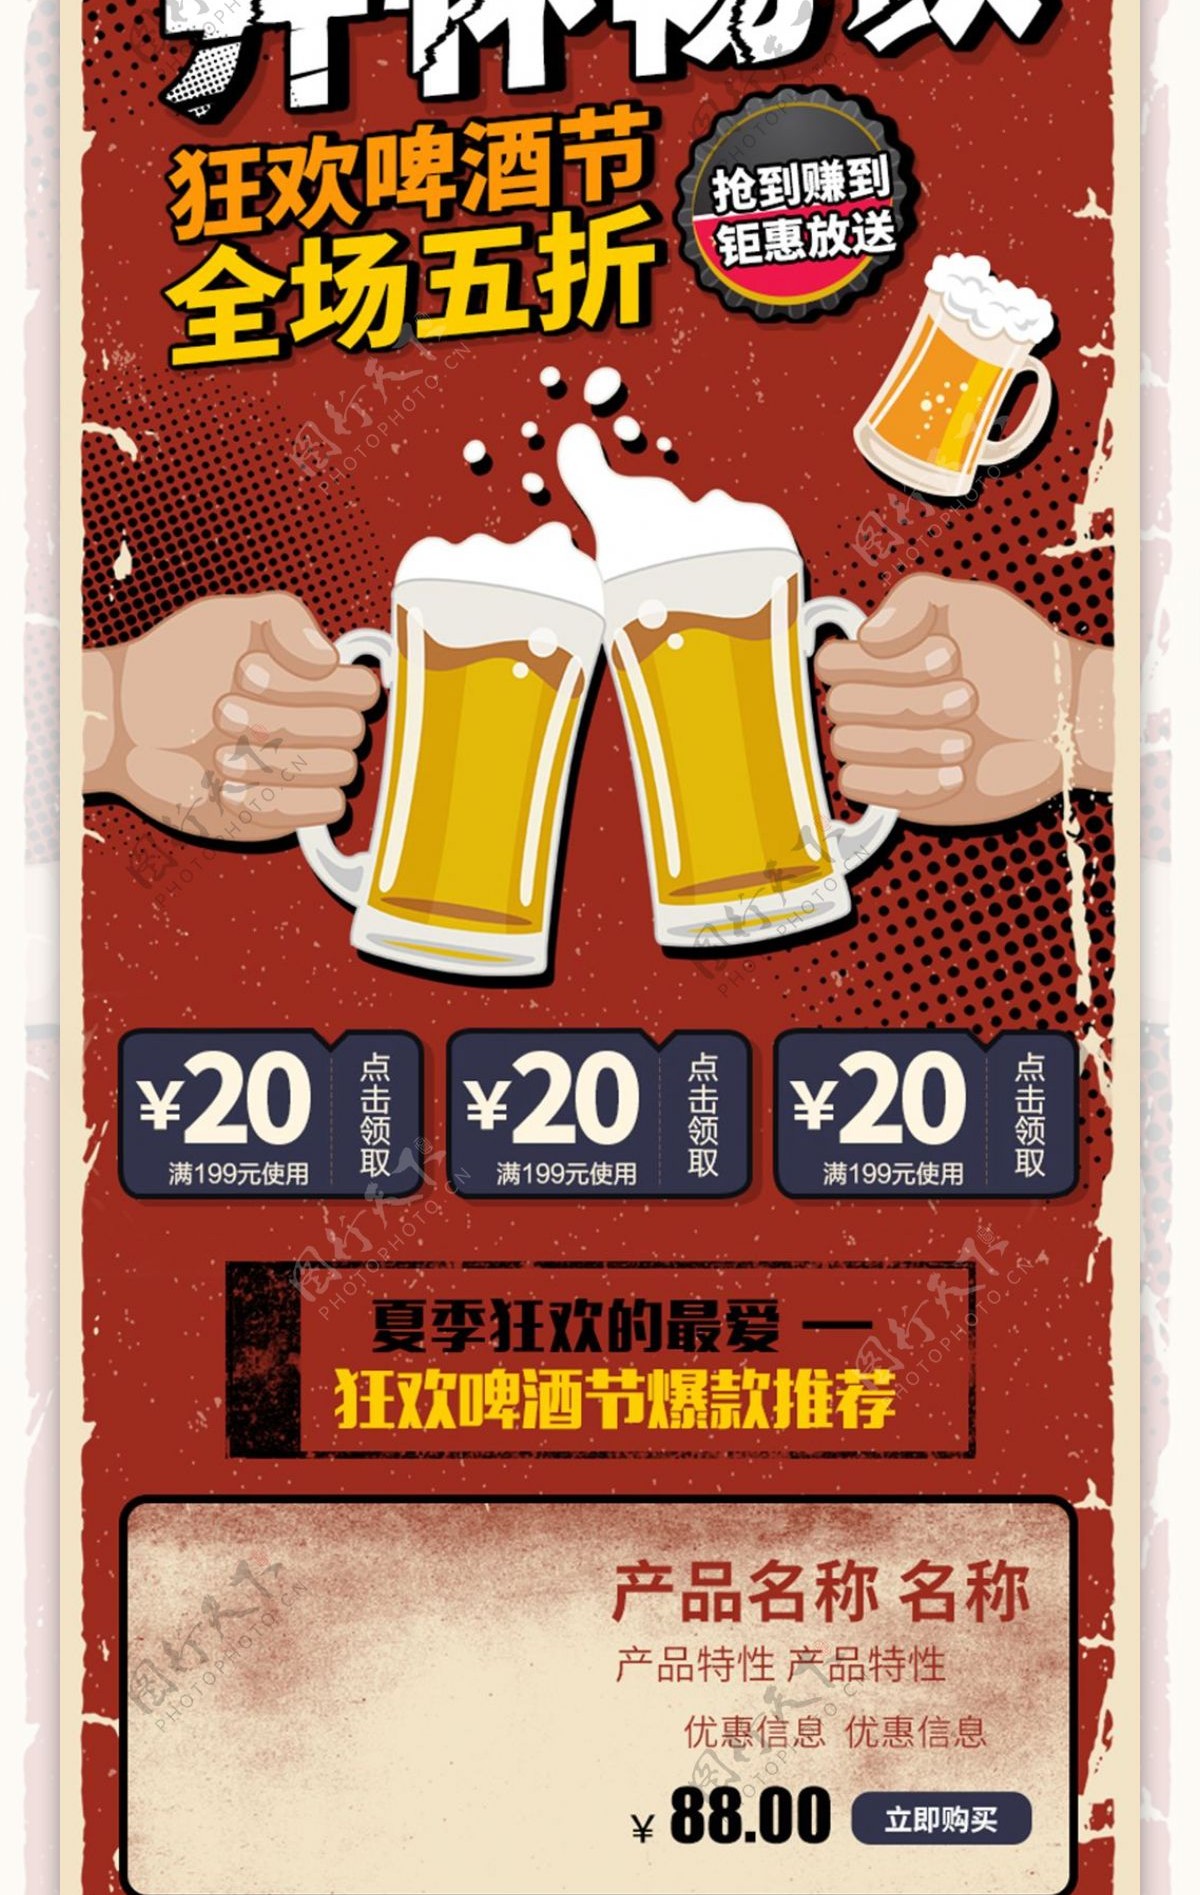 电商淘宝啤酒节促销暗红复古手绘手机移动端首页